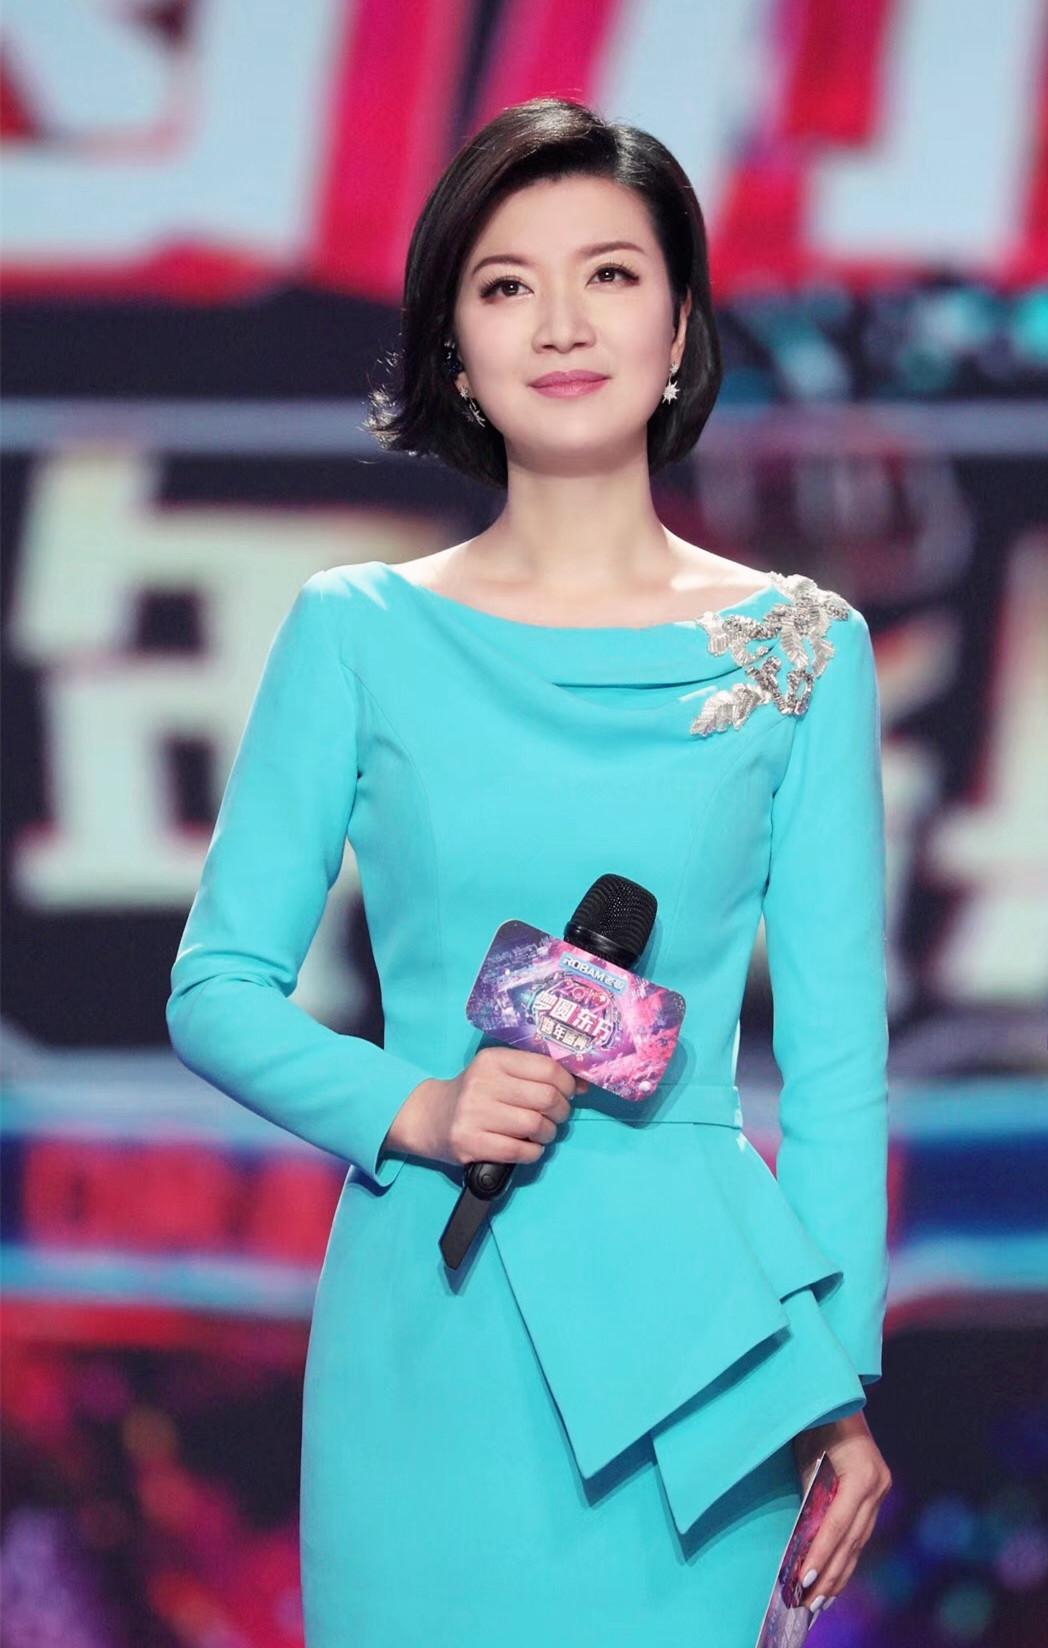 东方卫视知名主持人陈蓉就是其中一位